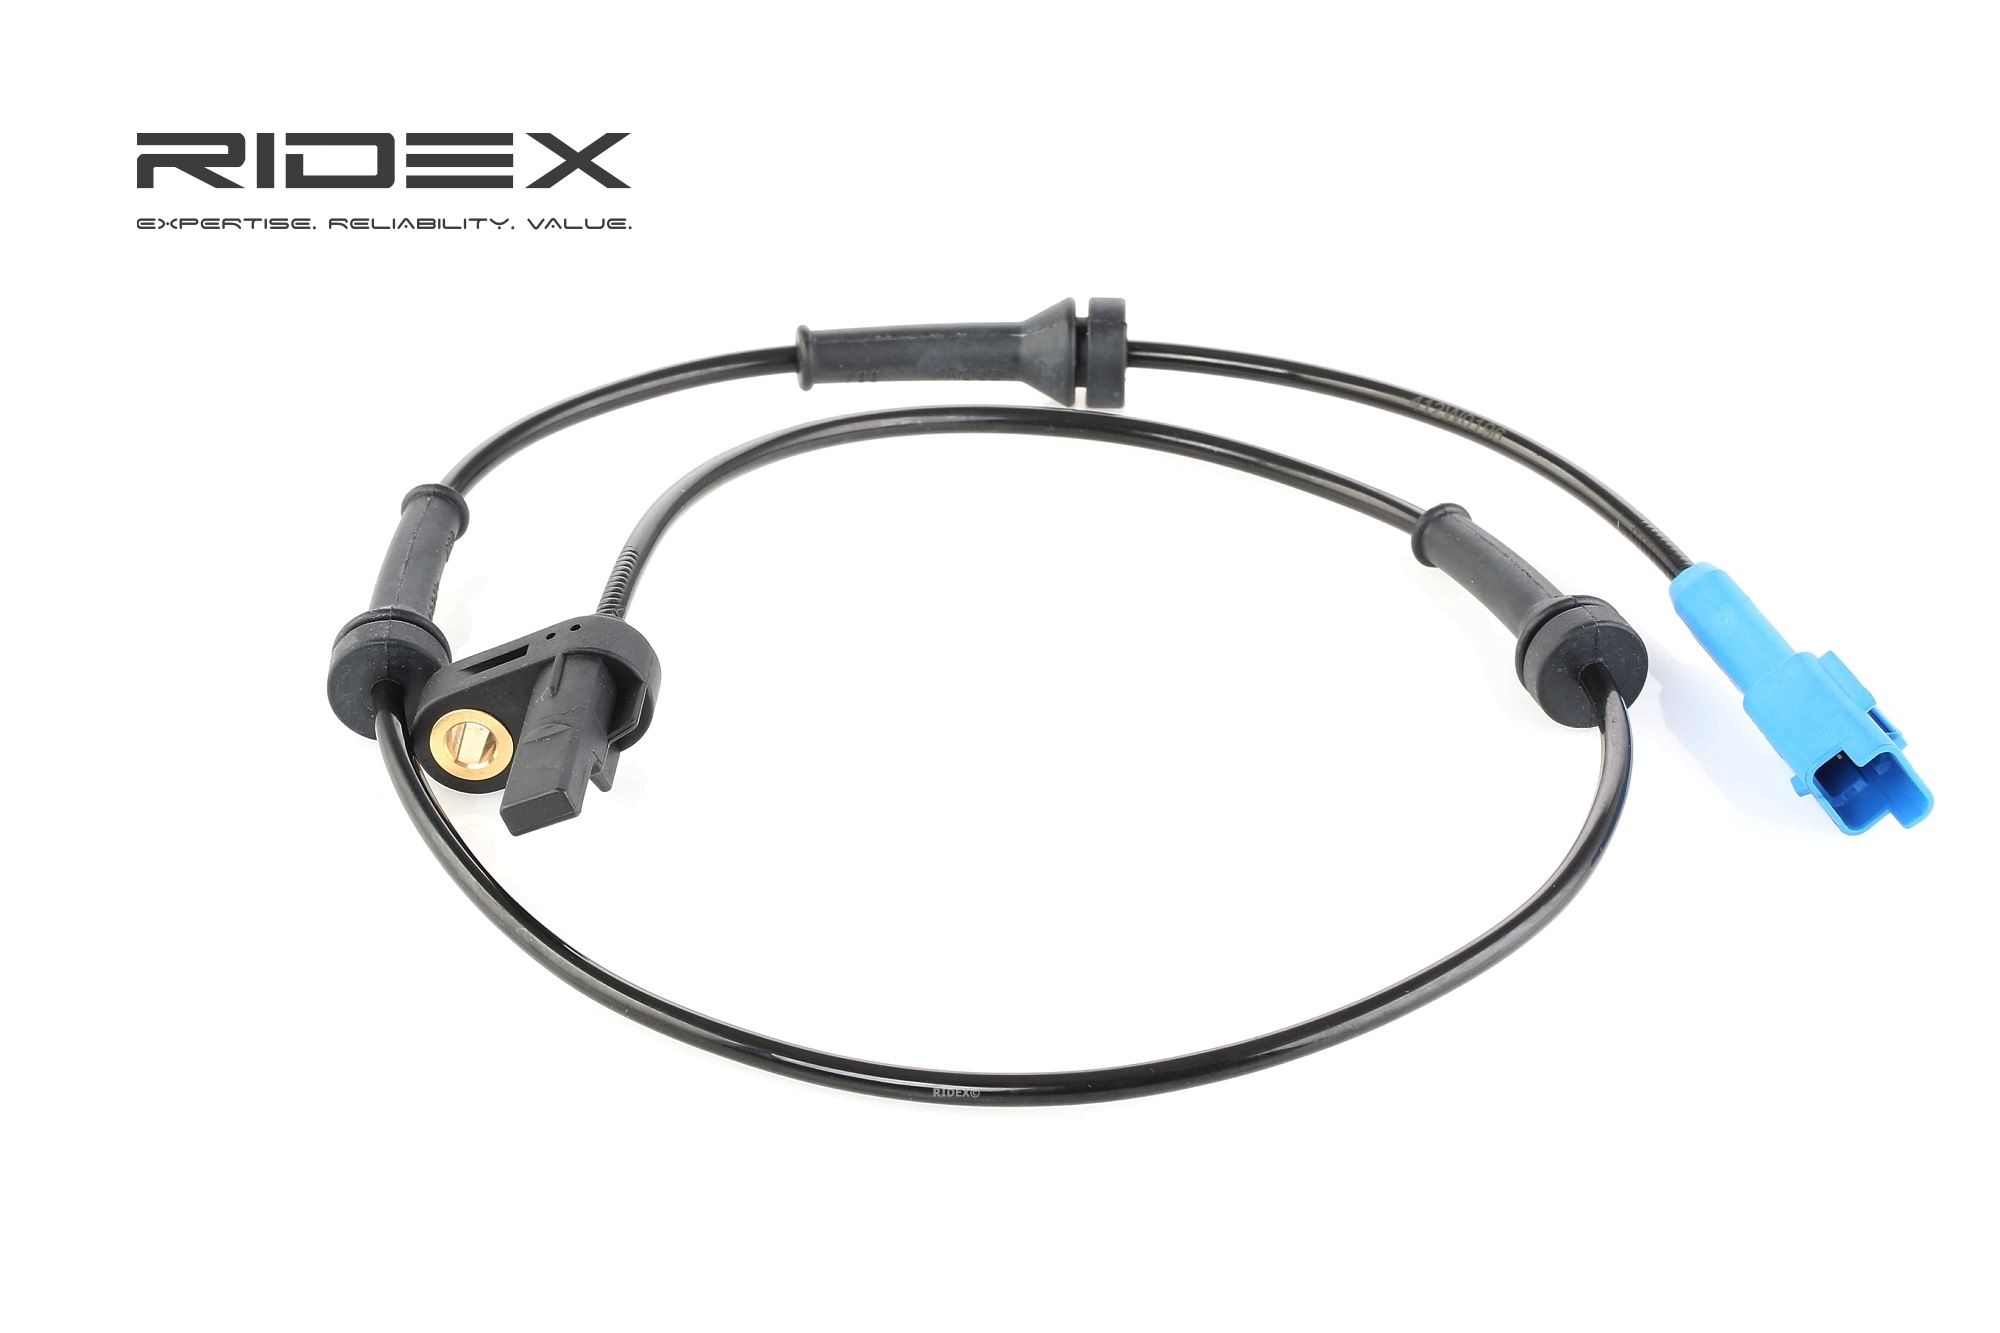 RIDEX Capteur ABS PEUGEOT 412W0196 4545A0,9640055280,4545A0 Controle Capteur ABS,Capteur De Roue ABS,Sensor ABS,Sonde ABS,Capteur, vitesse de roue